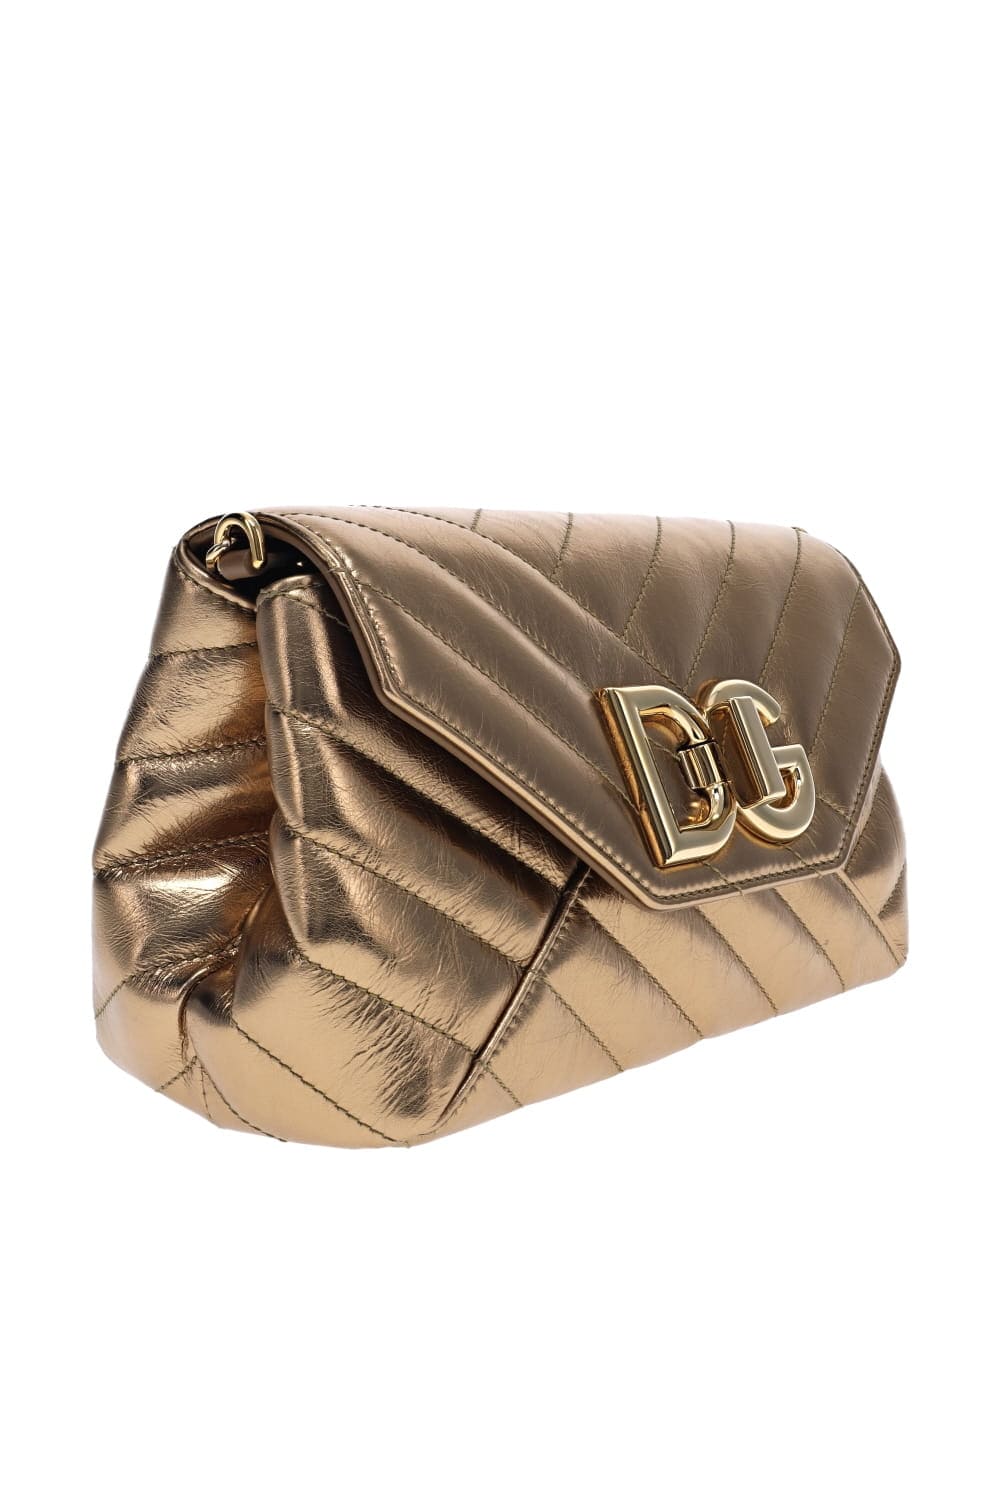 Dolce & Gabbana Gold Logo Quilted Leather Shoulder Bag